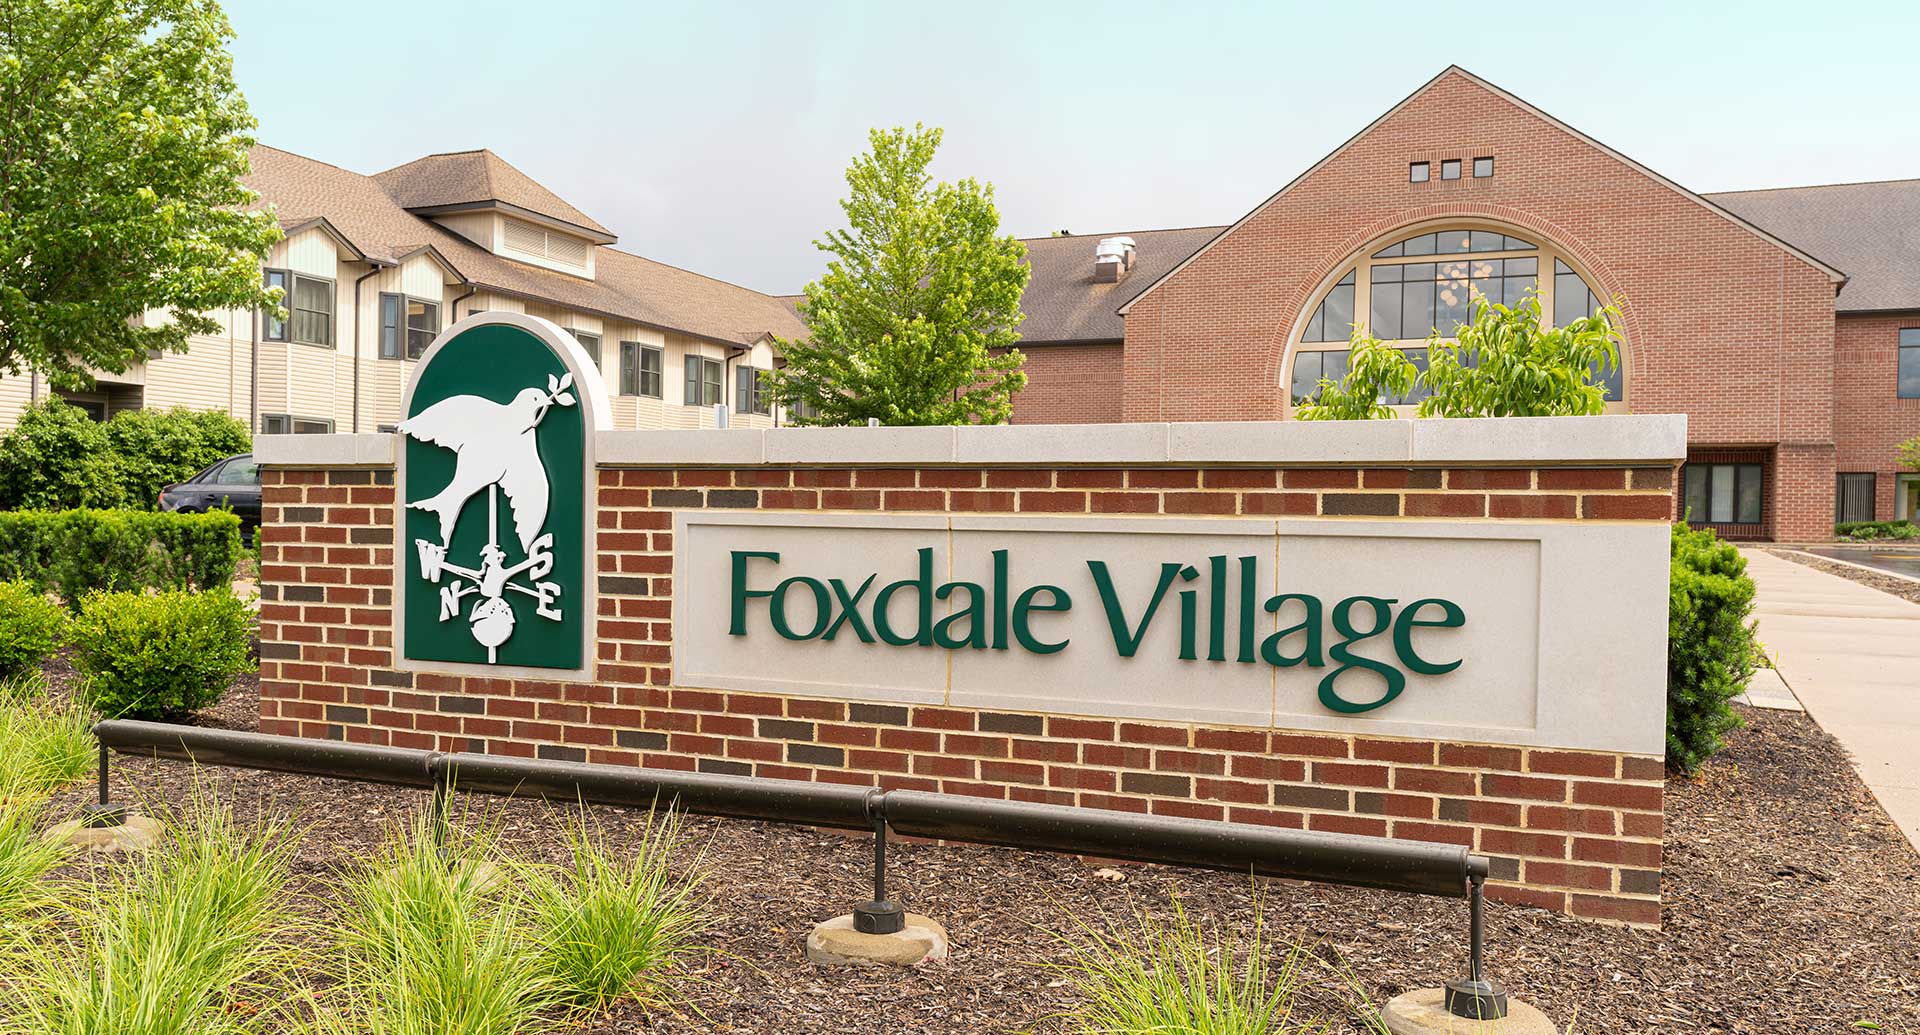 Foxdale Village sign